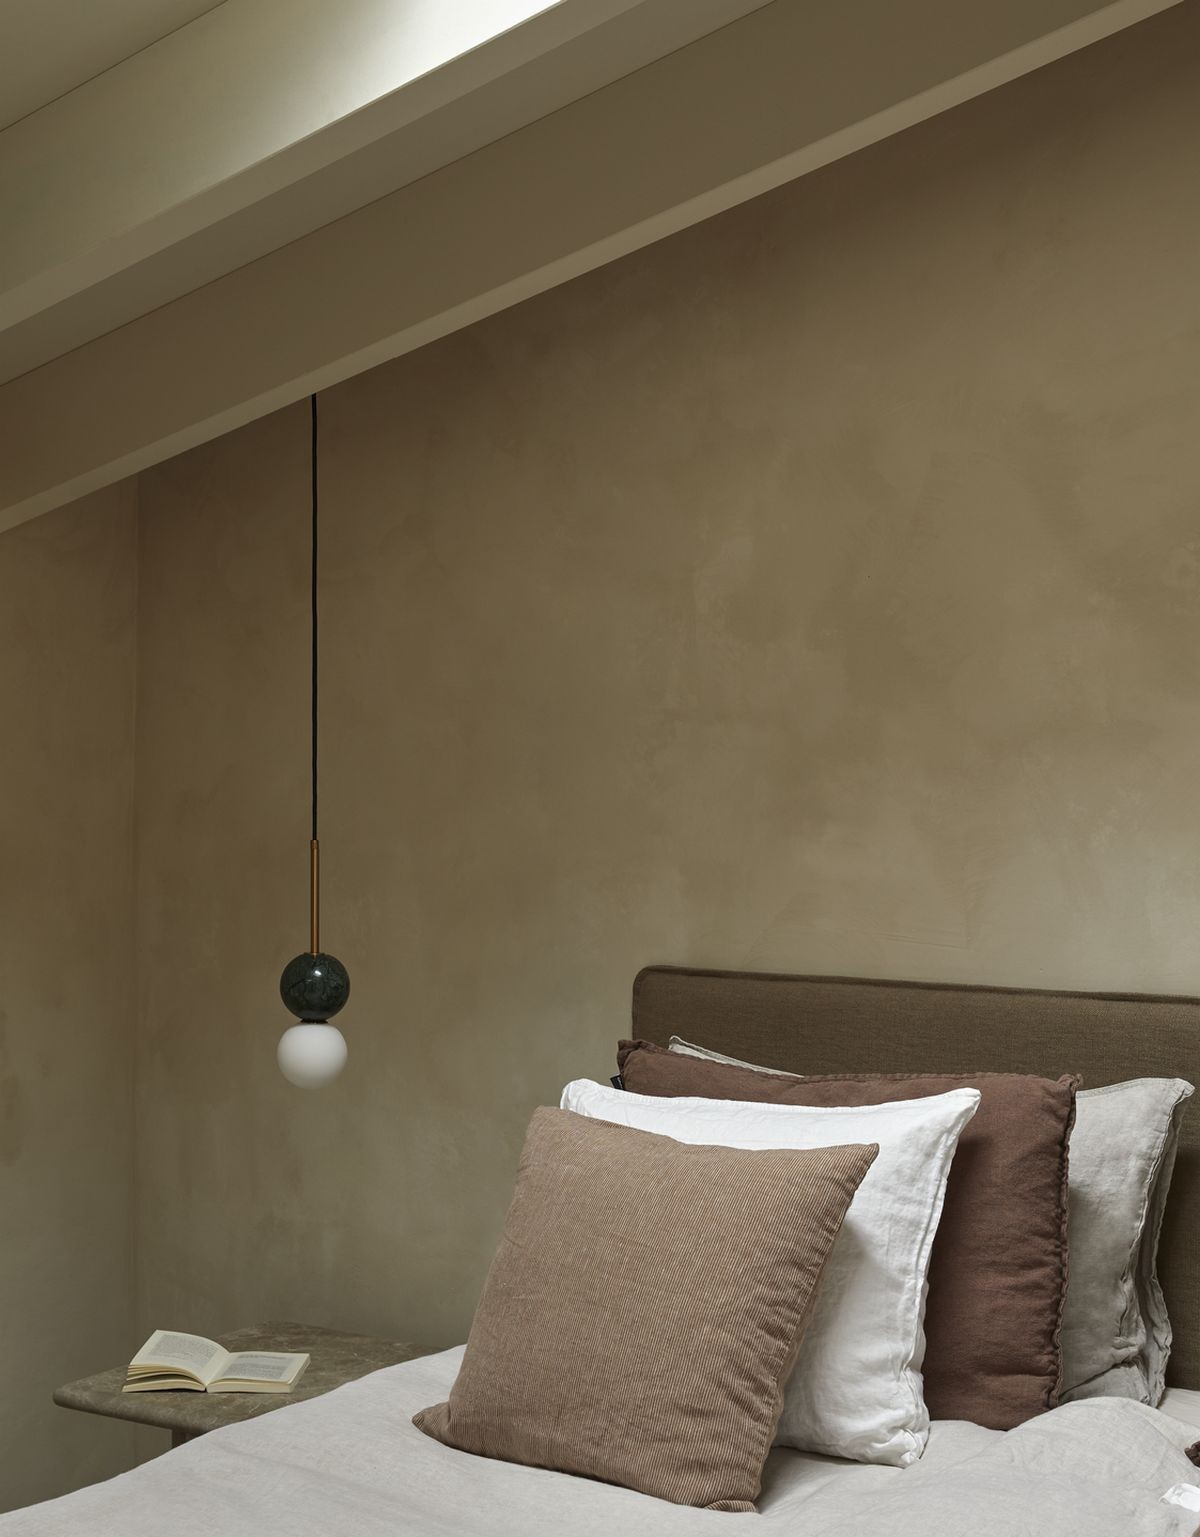 Ilumine sua casa de maneira única e moderna com o candeeiro sspenso Dalt. Seu estilo minimalista dará um toque especial ao seu ambiente!